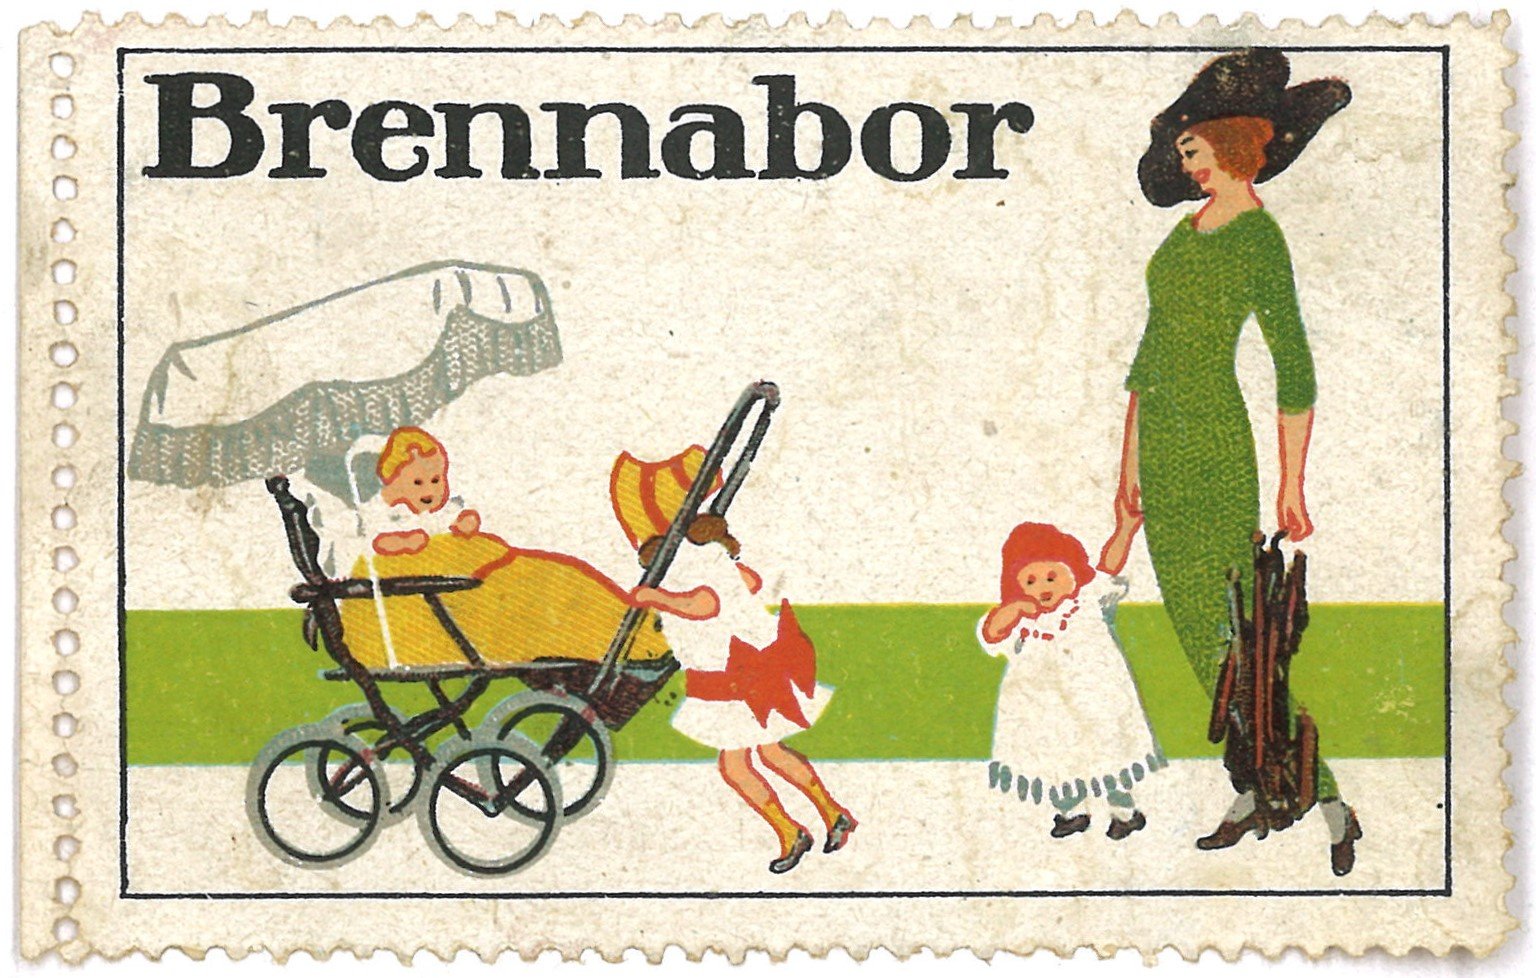 Brandenburg an der Havel: Brennabor-Kinderwagen (Landesgeschichtliche Vereinigung für die Mark Brandenburg e.V., Archiv CC BY)